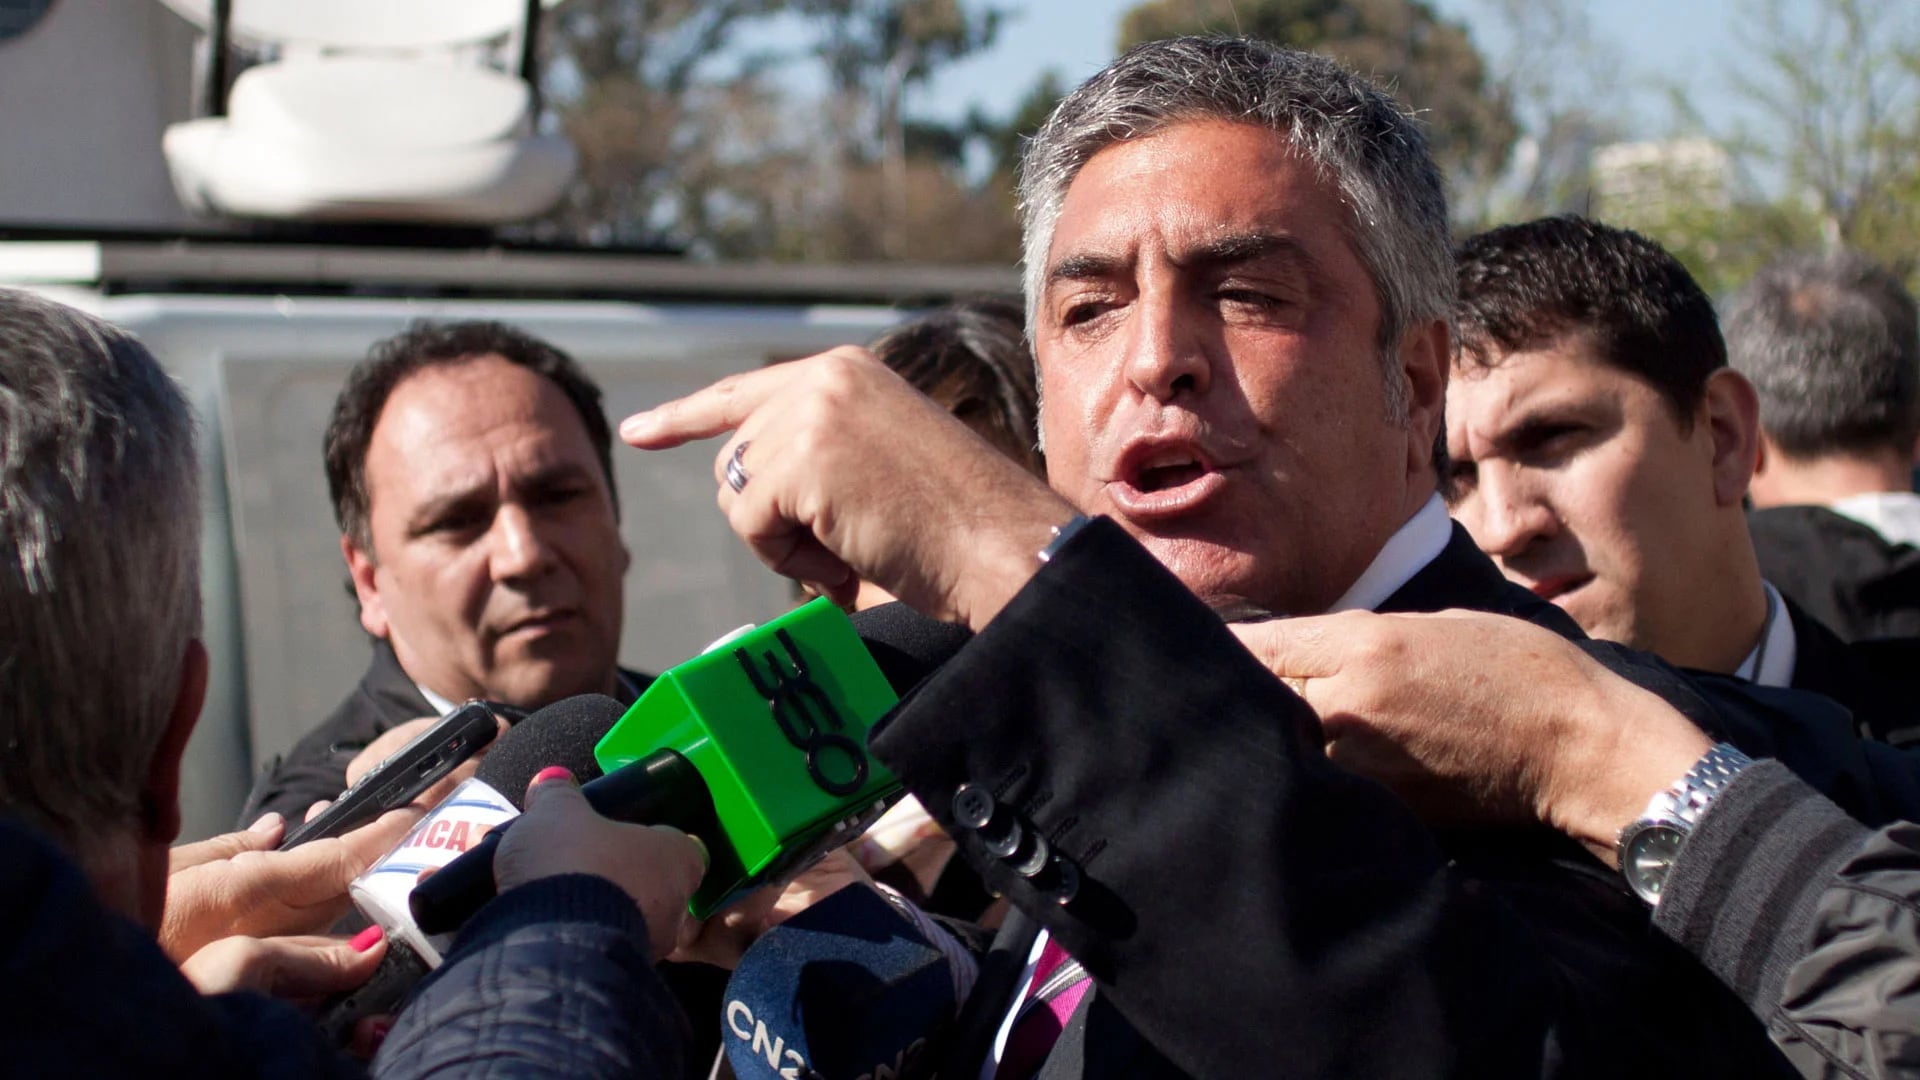 El abogado Gregorio Dalbón prometió que le embargarán “el traje y los pantalones” a Eduardo Feinmann por sus críticas a Cristina Elisabet Kirchner (NA)